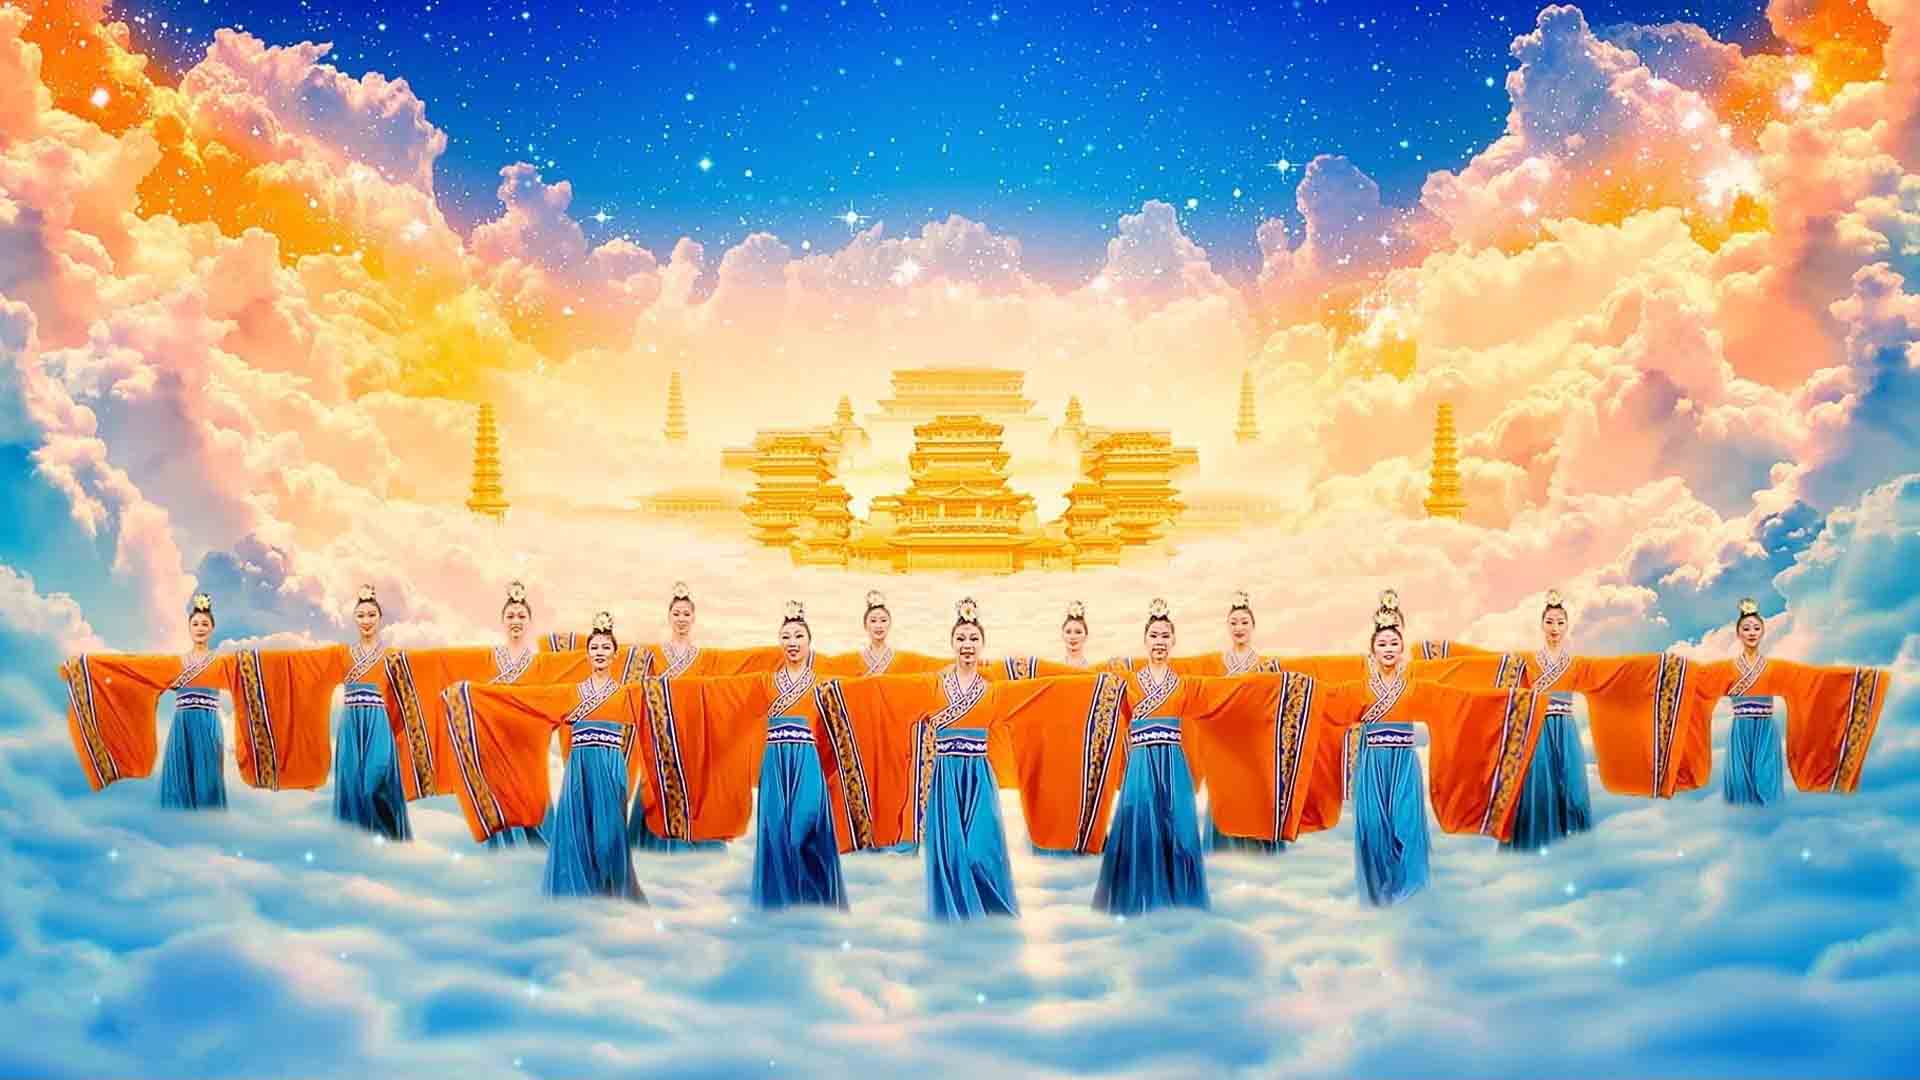 Khai mở hết thảy bí ẩn về sứ mệnh của những lời tiên tri (P.1) - Đoàn nghệ thuật Shen Yun